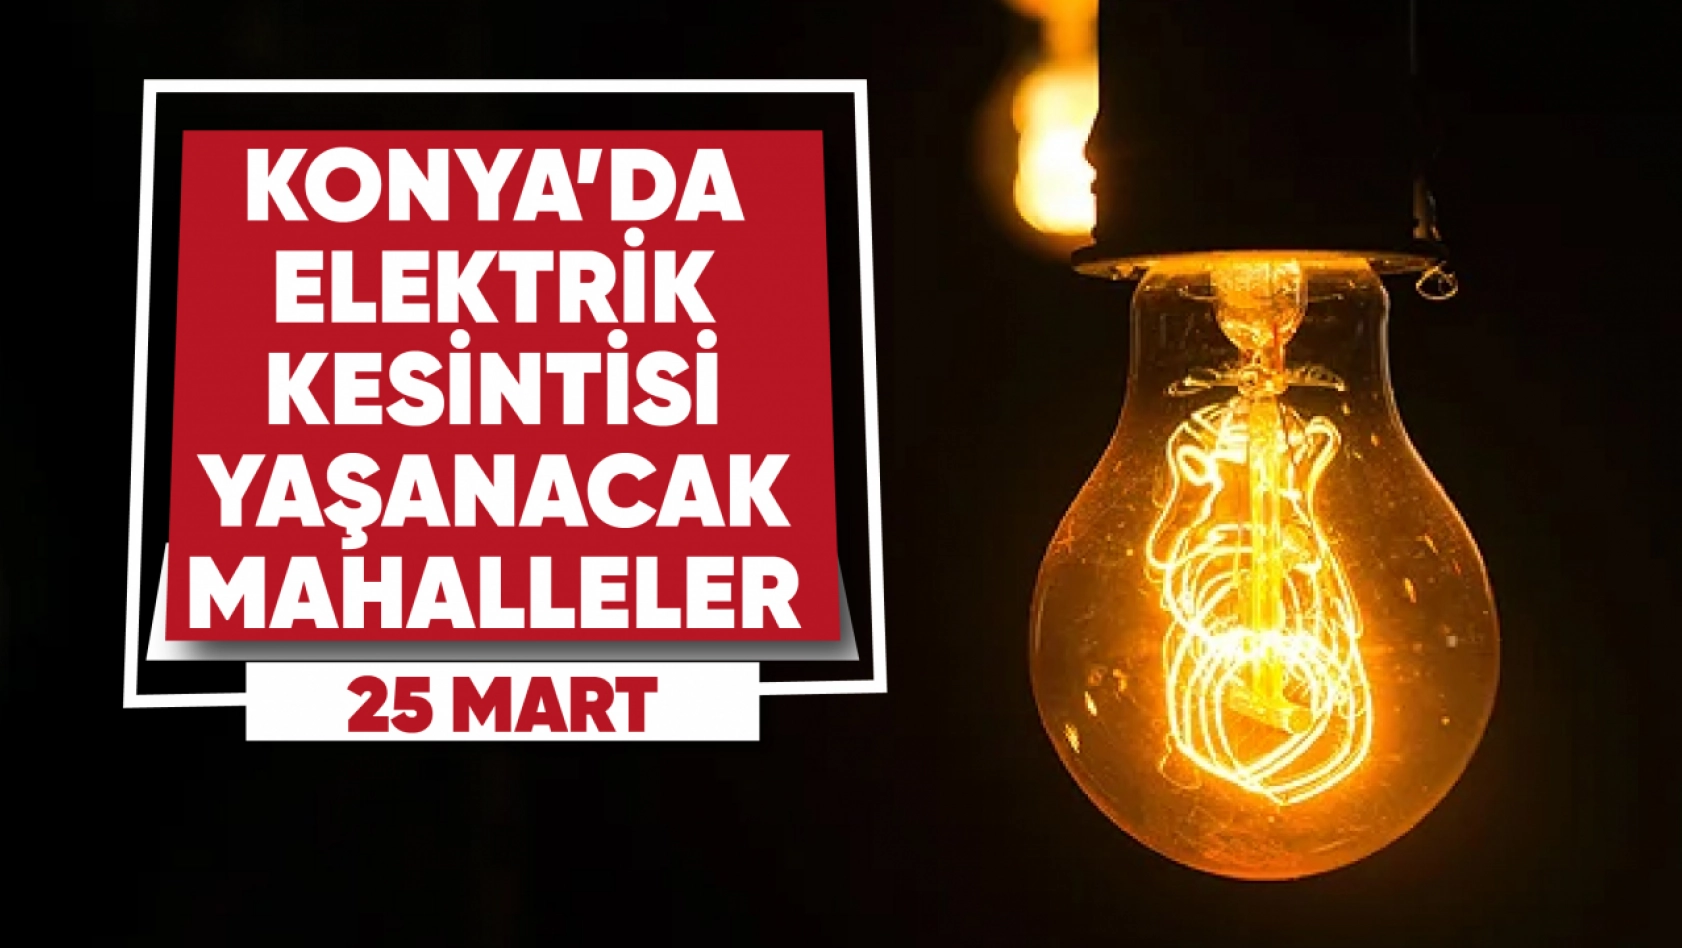 Konya'da Elektrik Kesintisi! Hazırlıklı Olun